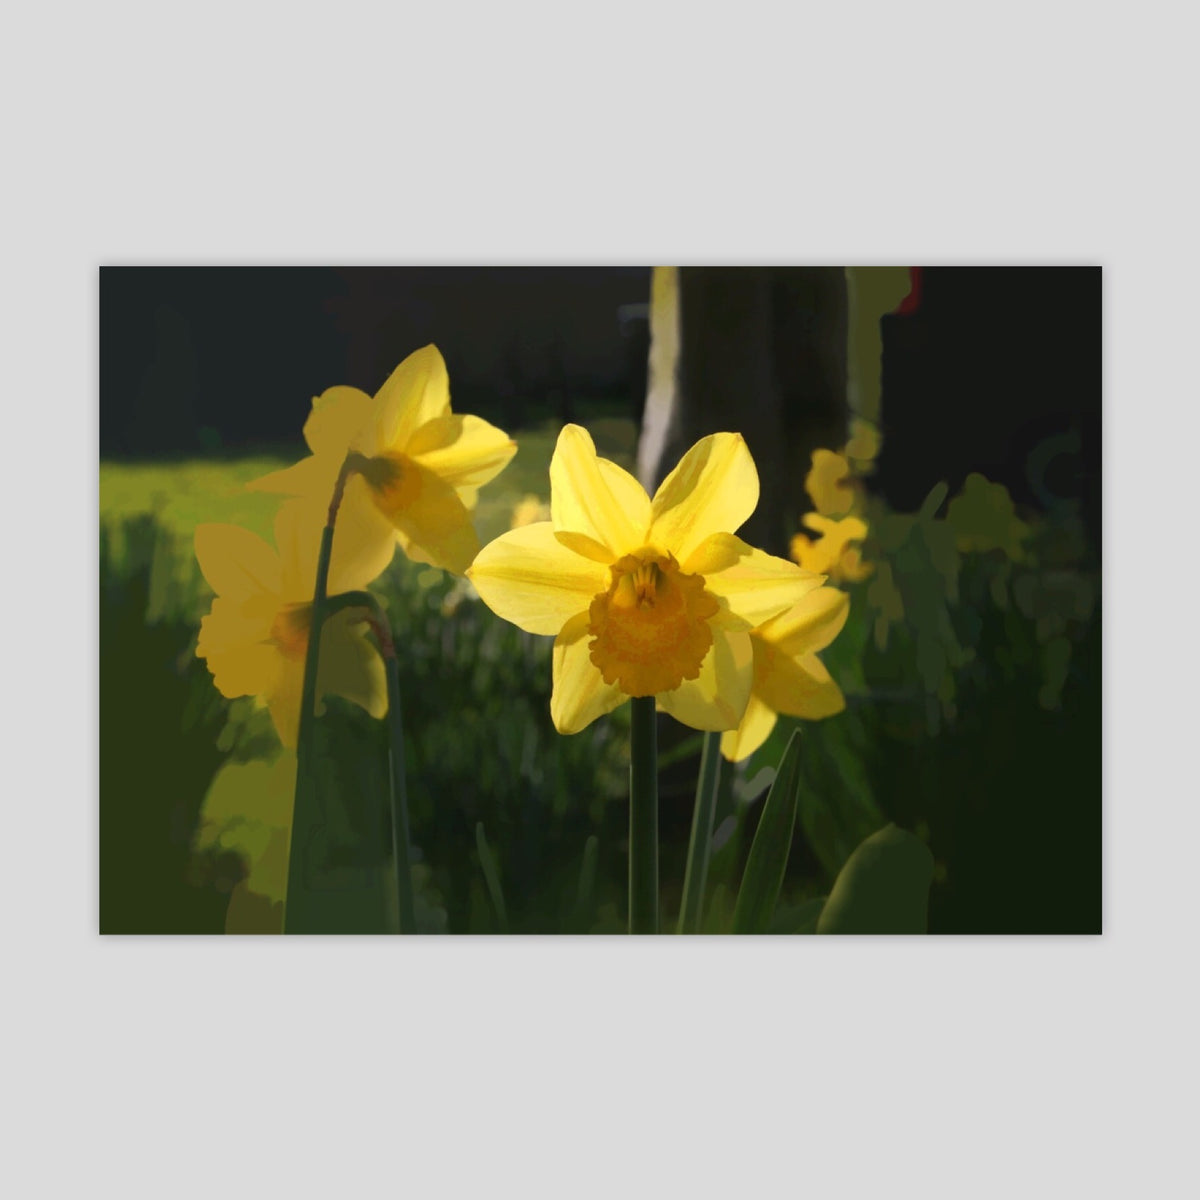 Daffodil (3035R-M7)